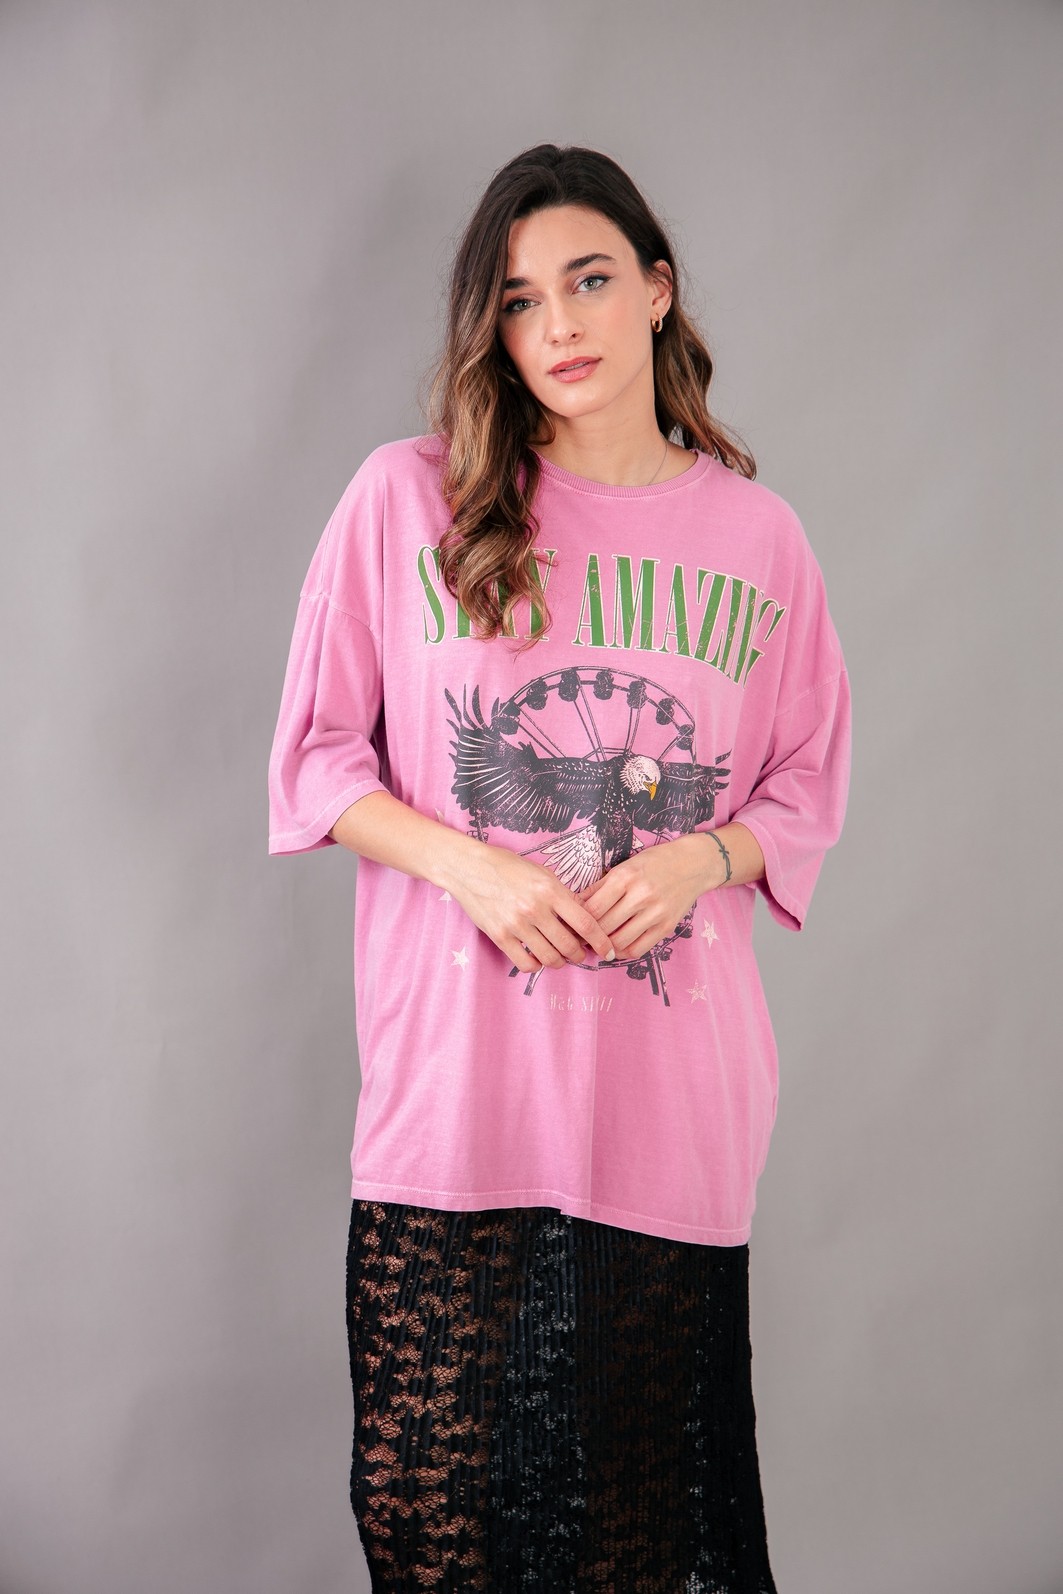 T-Shirt New York Rosa: As t-shirts em 100% algodão mais estilosas